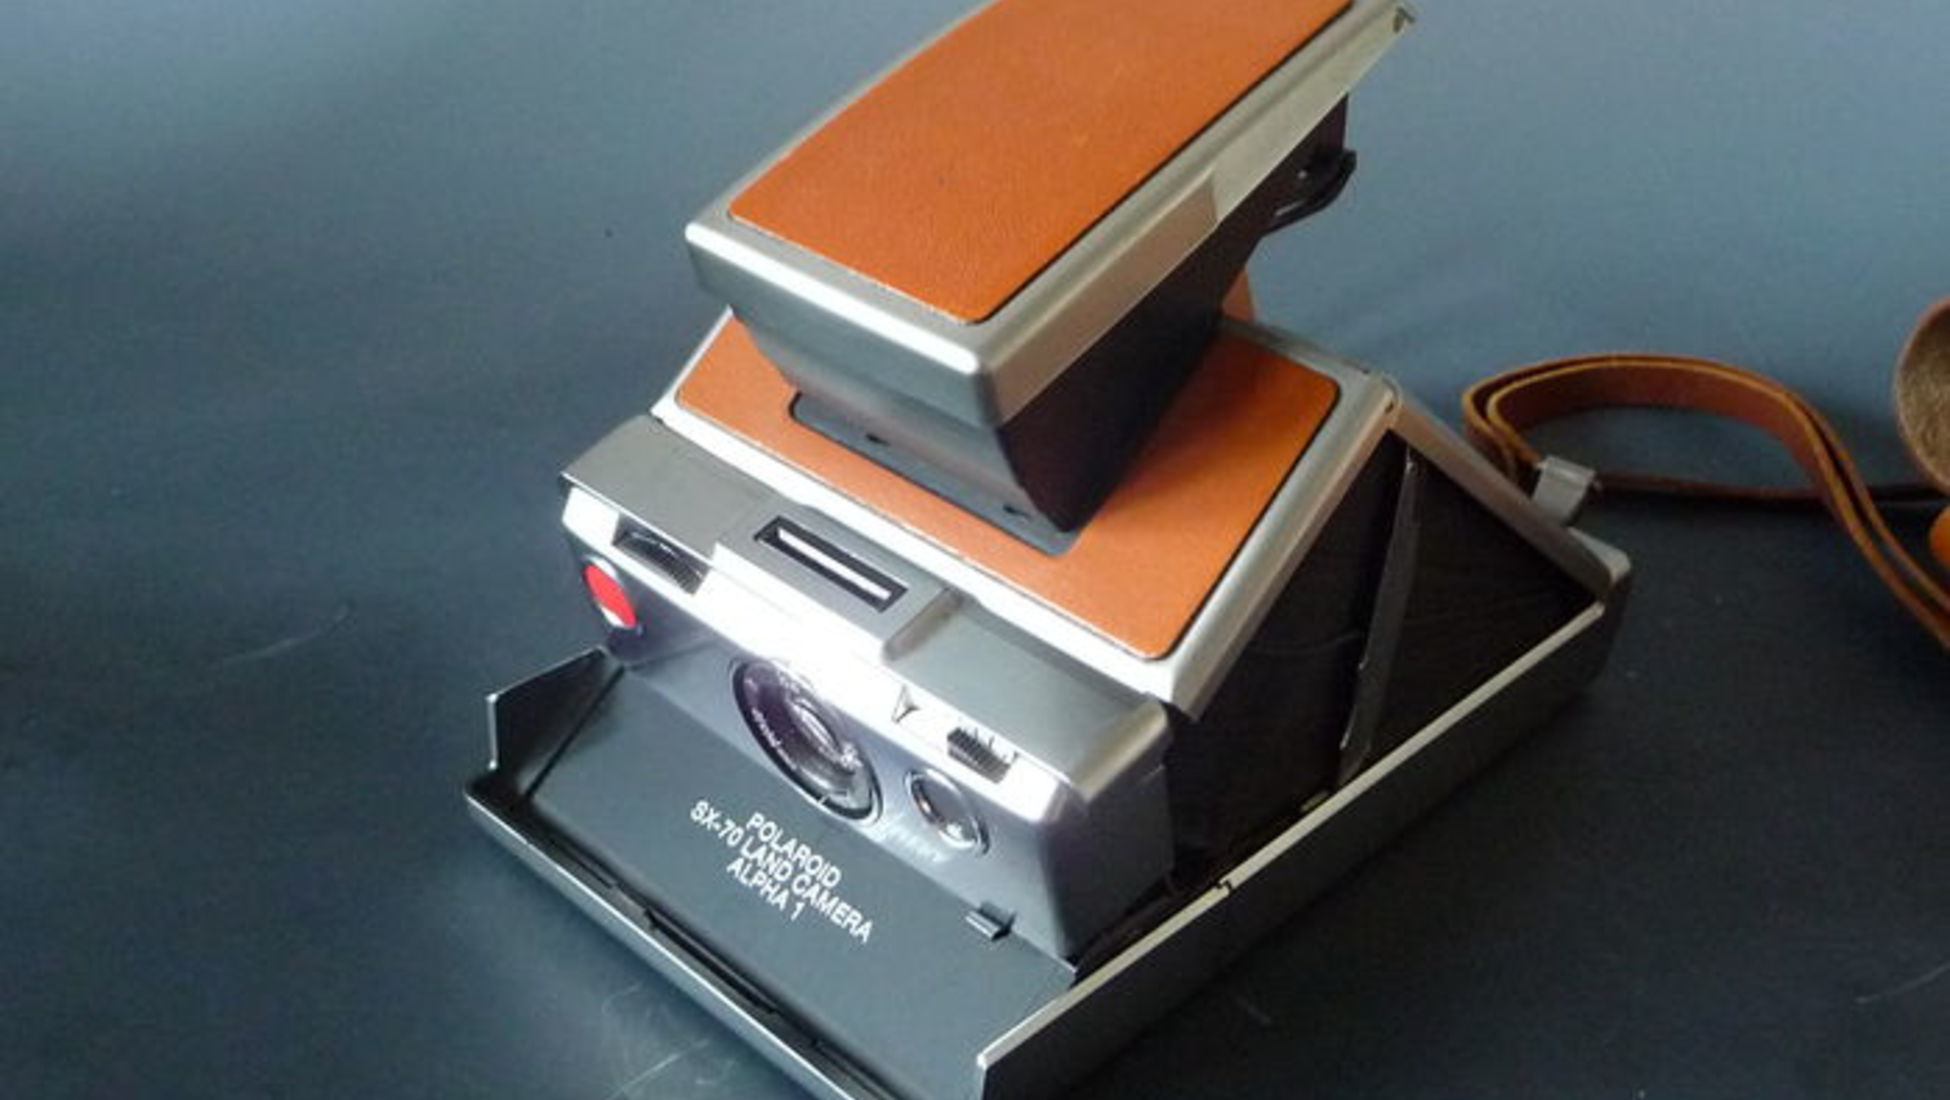 Por Qué Jeffrey Dahmer Utilizó Polaroid y no Otra Marca: Misterios Revelados